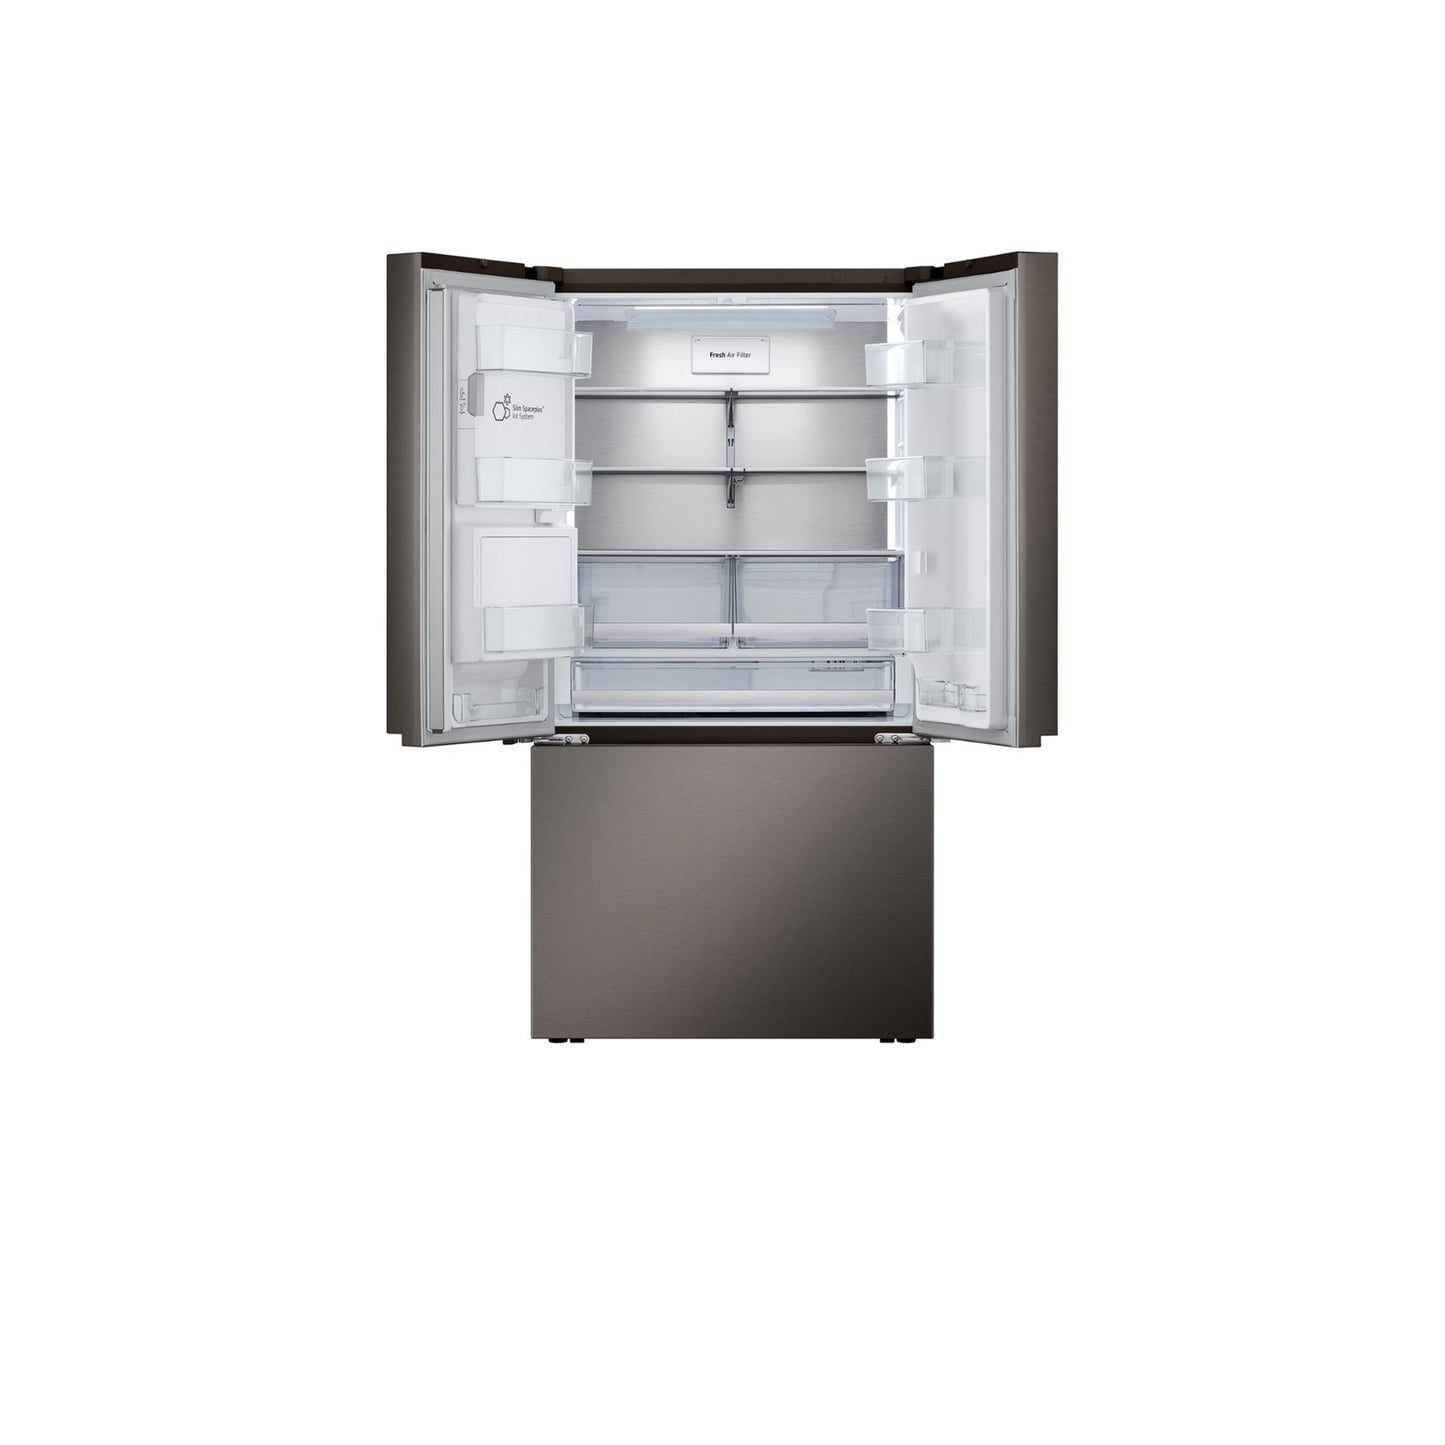 26 متر مكعب. قدم. ثلاجة Smart Counter-Depth MAX™ بباب فرنسي مع أربعة أنواع من الثلج 